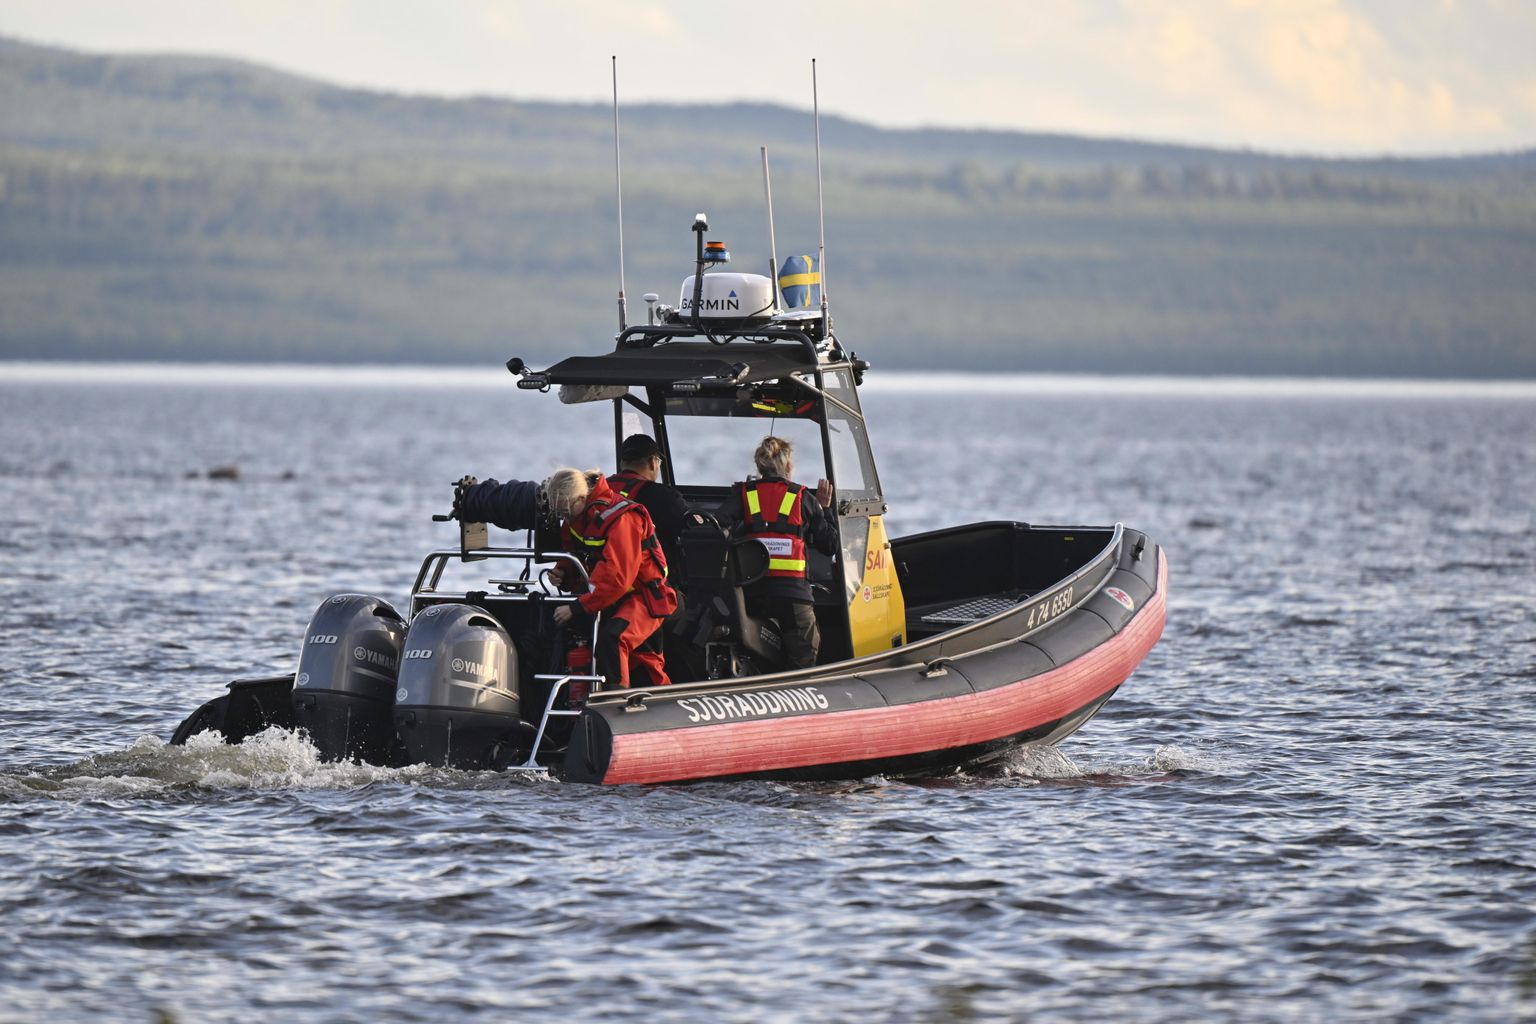 Rootsi merepääste Siljani järvel, kuhu kukkus 18. juulil amfiiblennuk TwinBee. Üks inimene hukkus, teist otsitakse